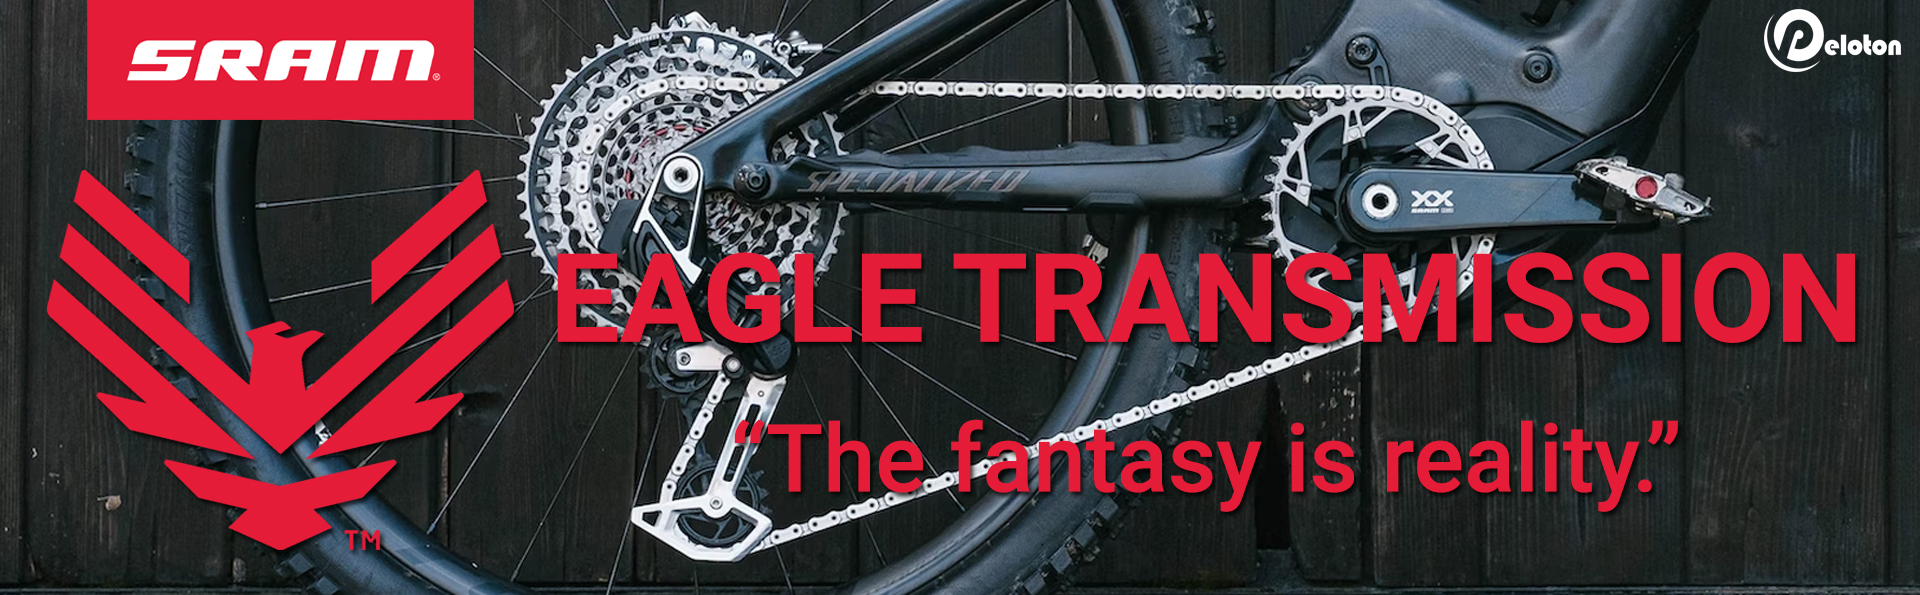 ชุดขับ EAGLE TRANSMISSION สั่นสะเทือนในวงการจักรยานเสือภูเขากับการเปลี่ยนเกียร์ใหม่